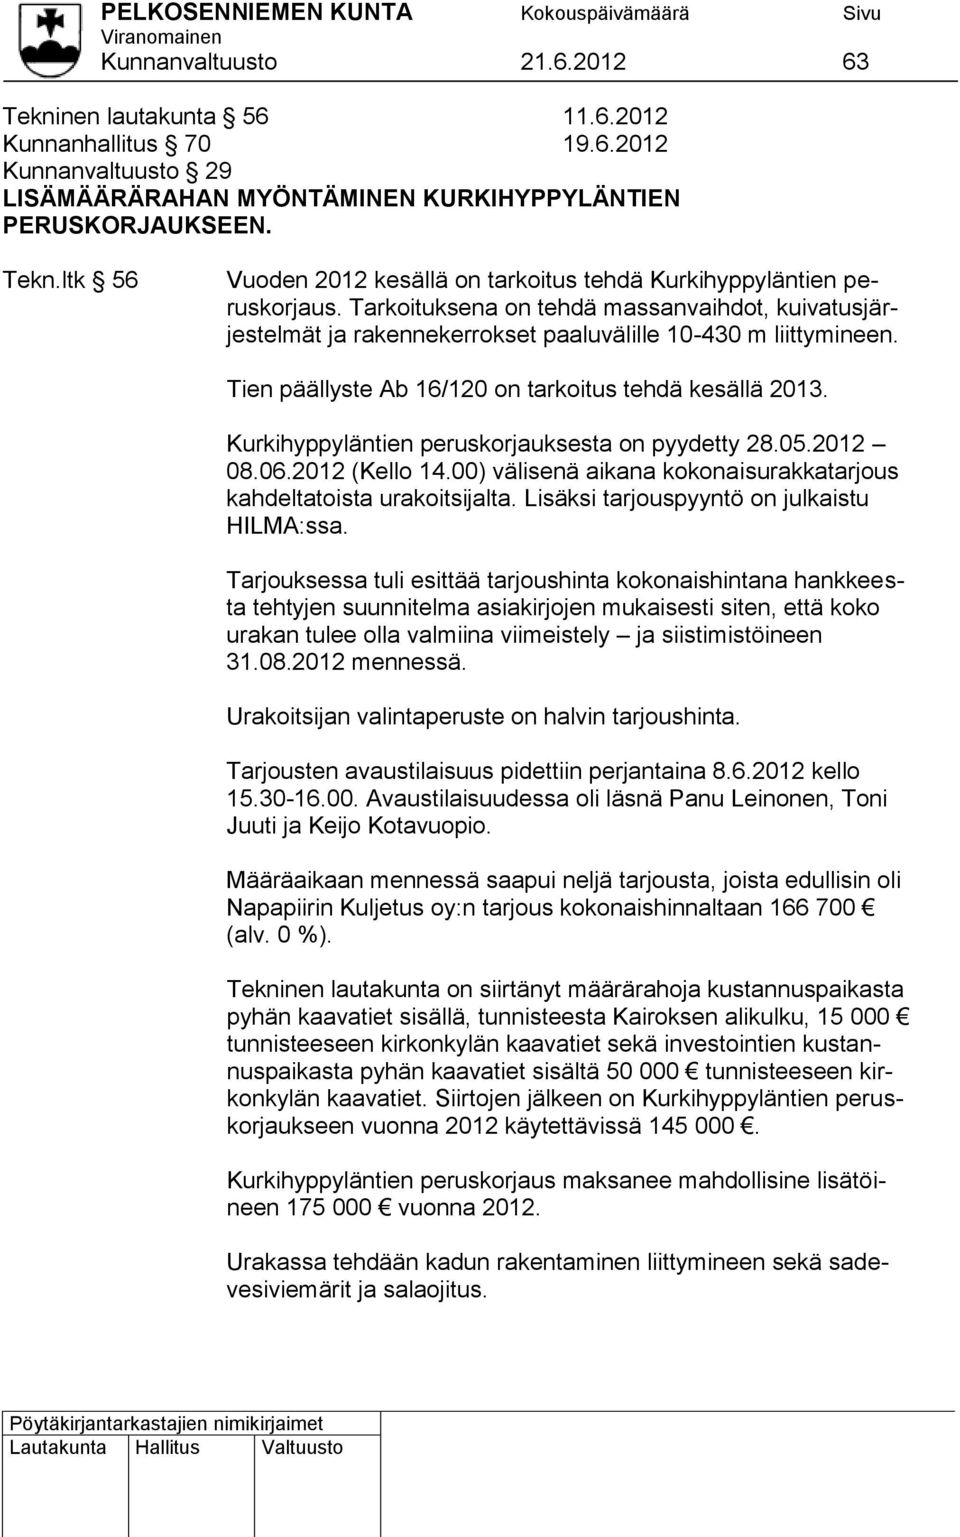 Kurkihyppyläntien peruskorjauksesta on pyydetty 28.05.2012 08.06.2012 (Kello 14.00) välisenä aikana kokonaisurakkatarjous kahdeltatoista urakoitsijalta. Lisäksi tarjouspyyntö on julkaistu HILMA:ssa.